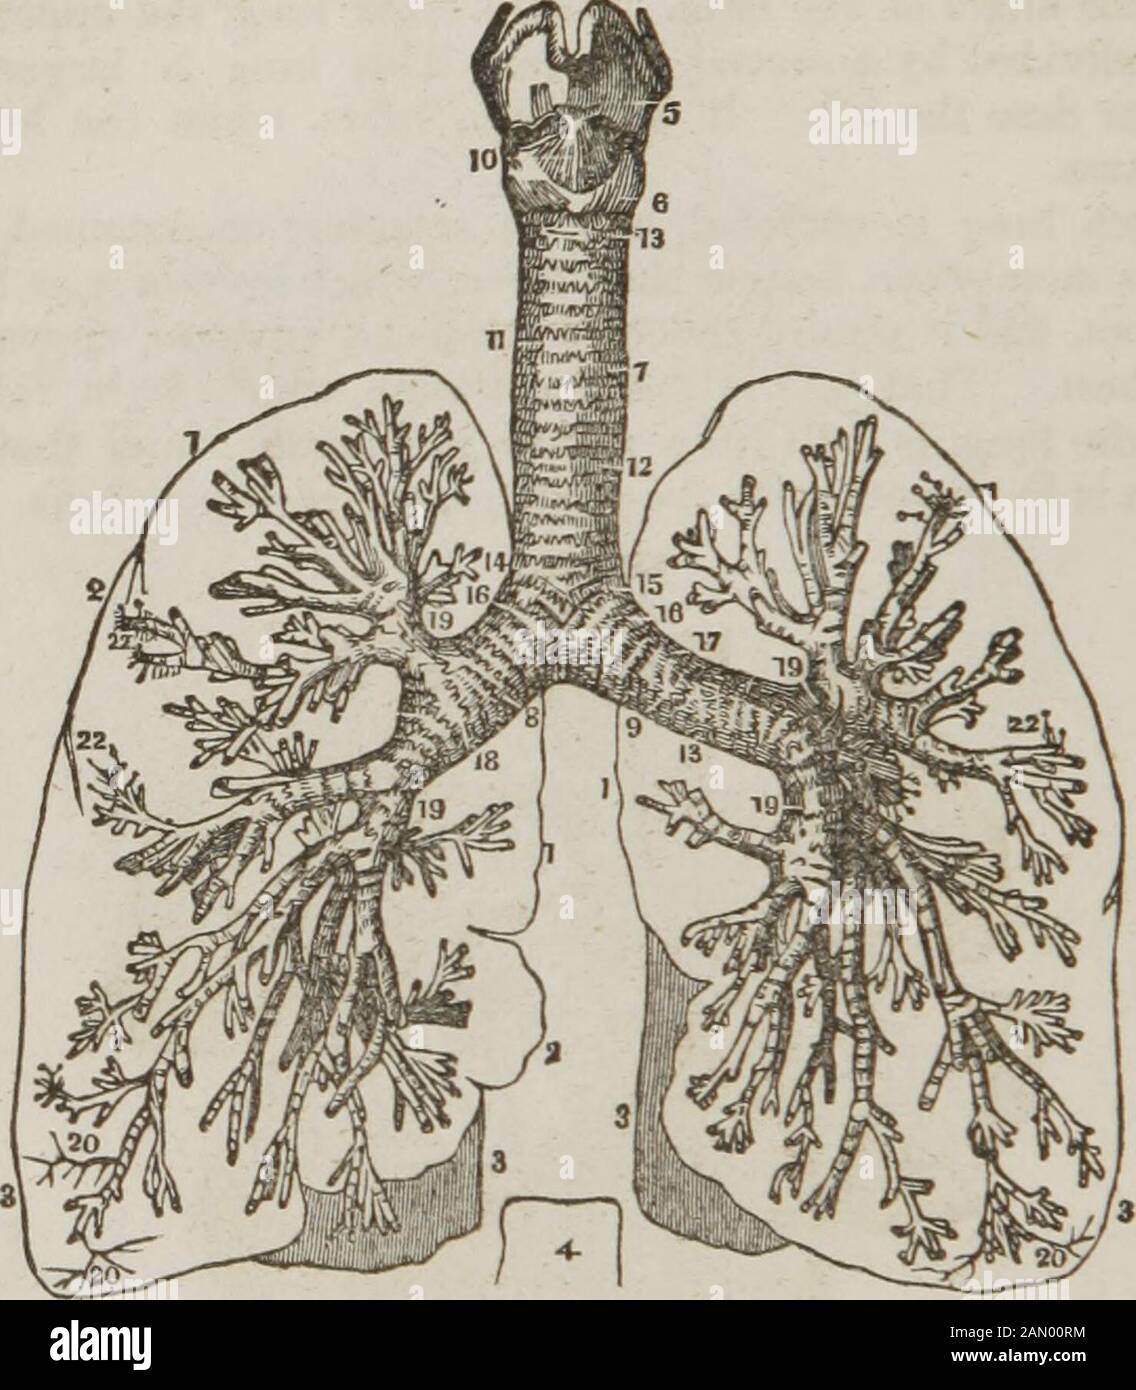 Anatomia e fisiologia : progettato per accademie e famiglie . m tutti gli altri allegati. I v sono disposti in modo da mostrare le parti con maggiore precisione. 1, l'auricola destra del cuore. 2, la vena cava superiore. 3, la vena cava posteriore. 4, il ventricolo destro. 5, l'arterv polmonare che emette da it.a, a.. L'arteria polmonare (destra e sinistra) che entra nei polmoni, b, b, Bronchi, o aria-tube, entrando nei polmoni. », «, vene Polmonari che emettono dai polmoni. 6, la leftauricola. 7, il ventricolo sinistro. 8, l'aorta. 9, il lobo superiore del polmone sinistro. 10, il suo lobo inferiore. 11, il lobo superiore di t Foto Stock